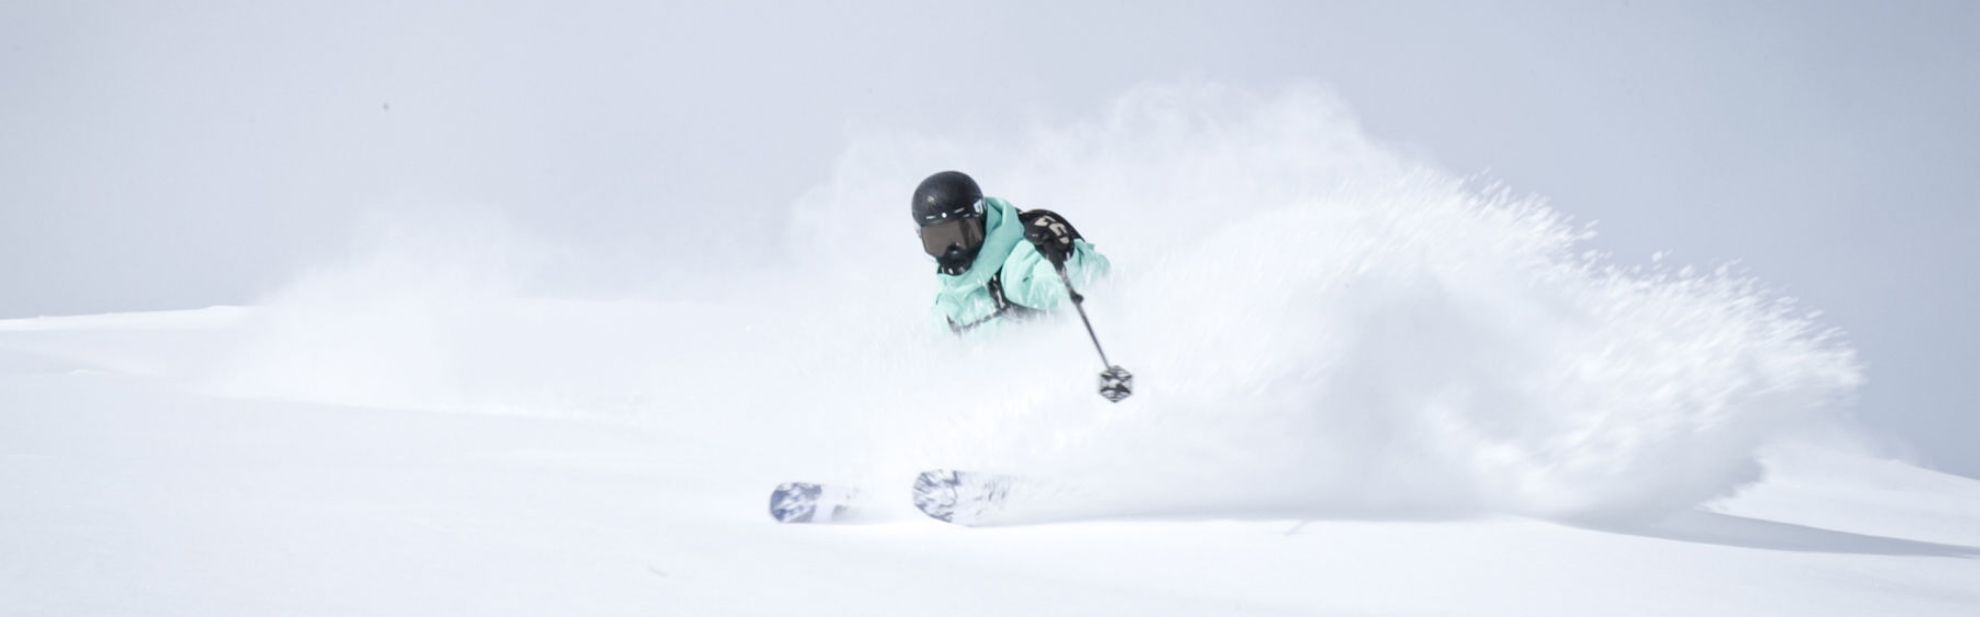 Teenager skiing through powder